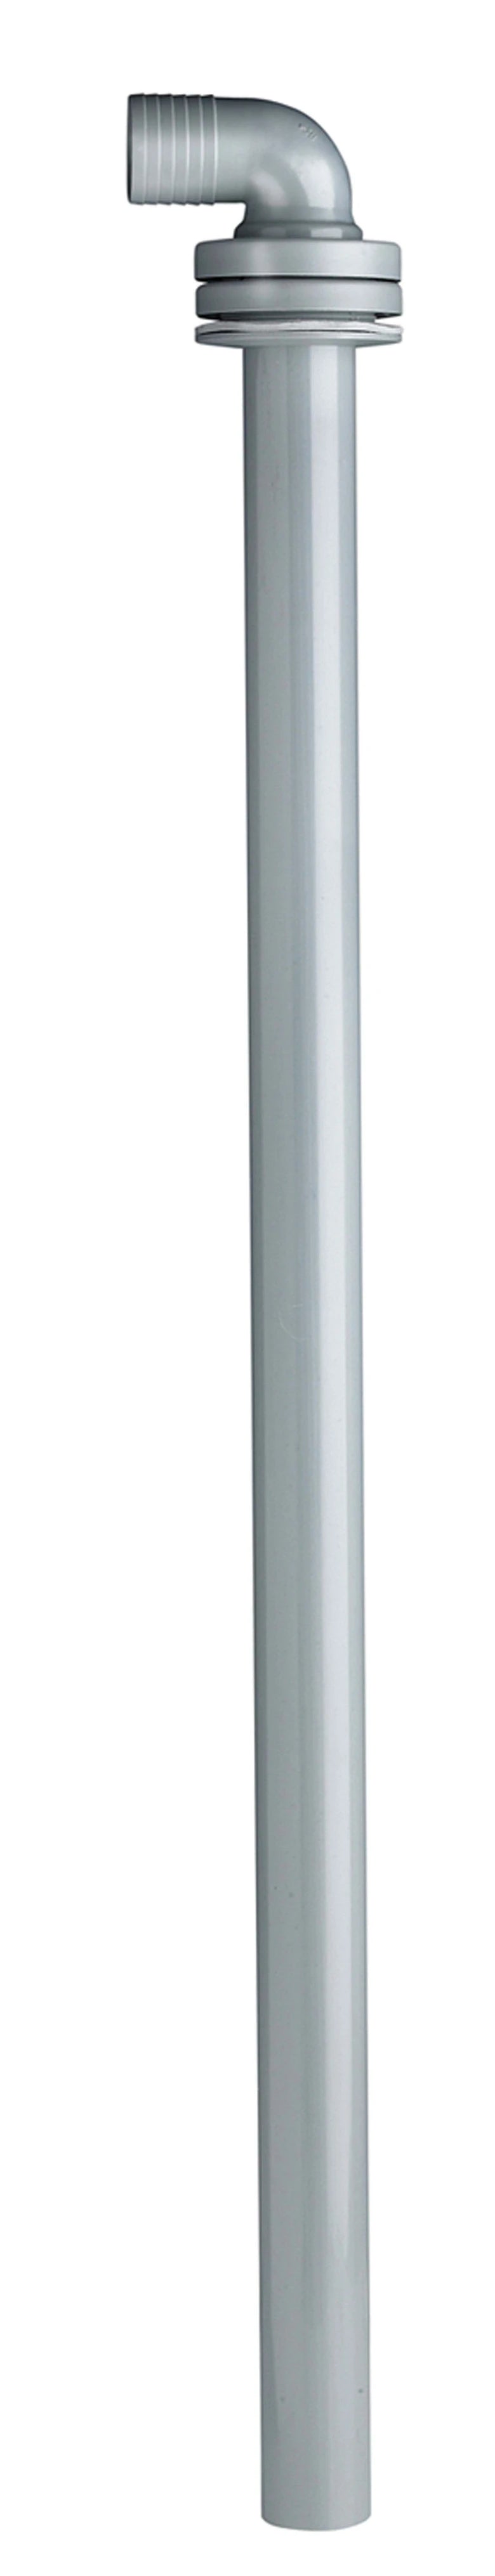 Sugrör, L=780 mm, slangnippel för slang med i.d. 38 mm, rak